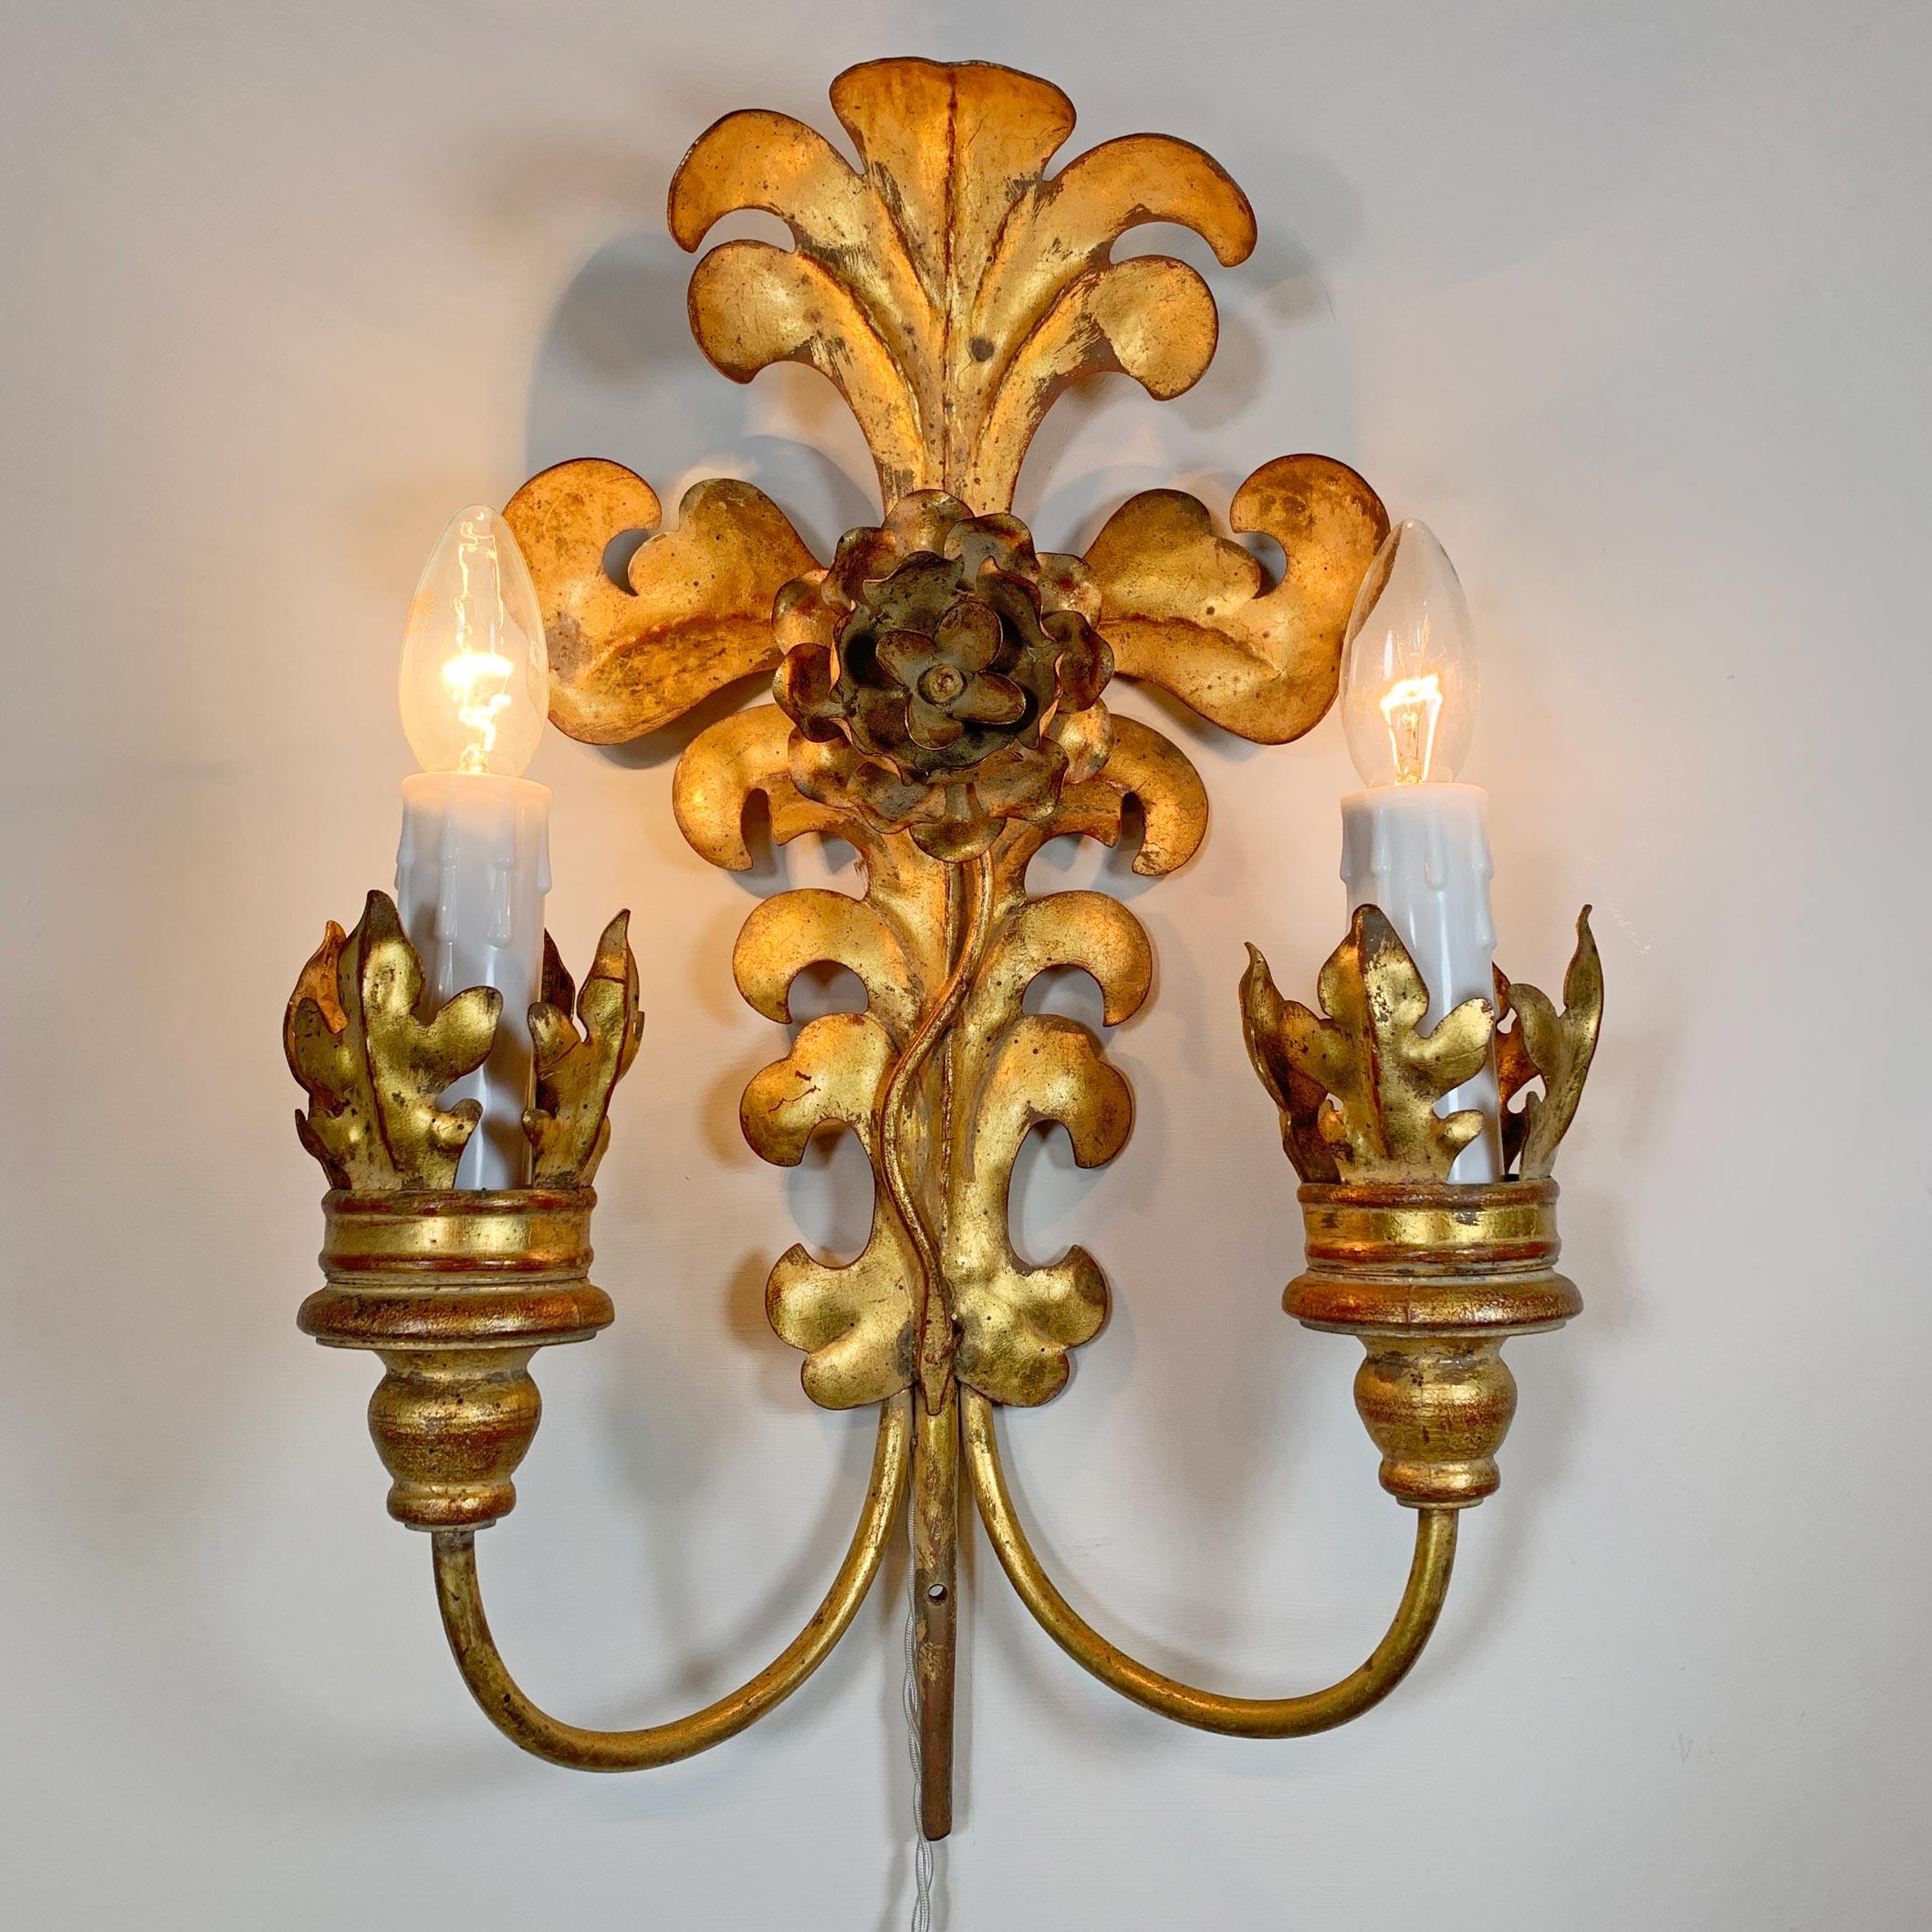 Fabuleux ensemble d'appliques italiennes des années 1980, en métal doré, en forme de feuilles d'acanthe avec un centre floral. Chaque lampe est équipée de deux douilles e14 (petites douilles à vis). Il s'agit de très grandes lampes d'une qualité